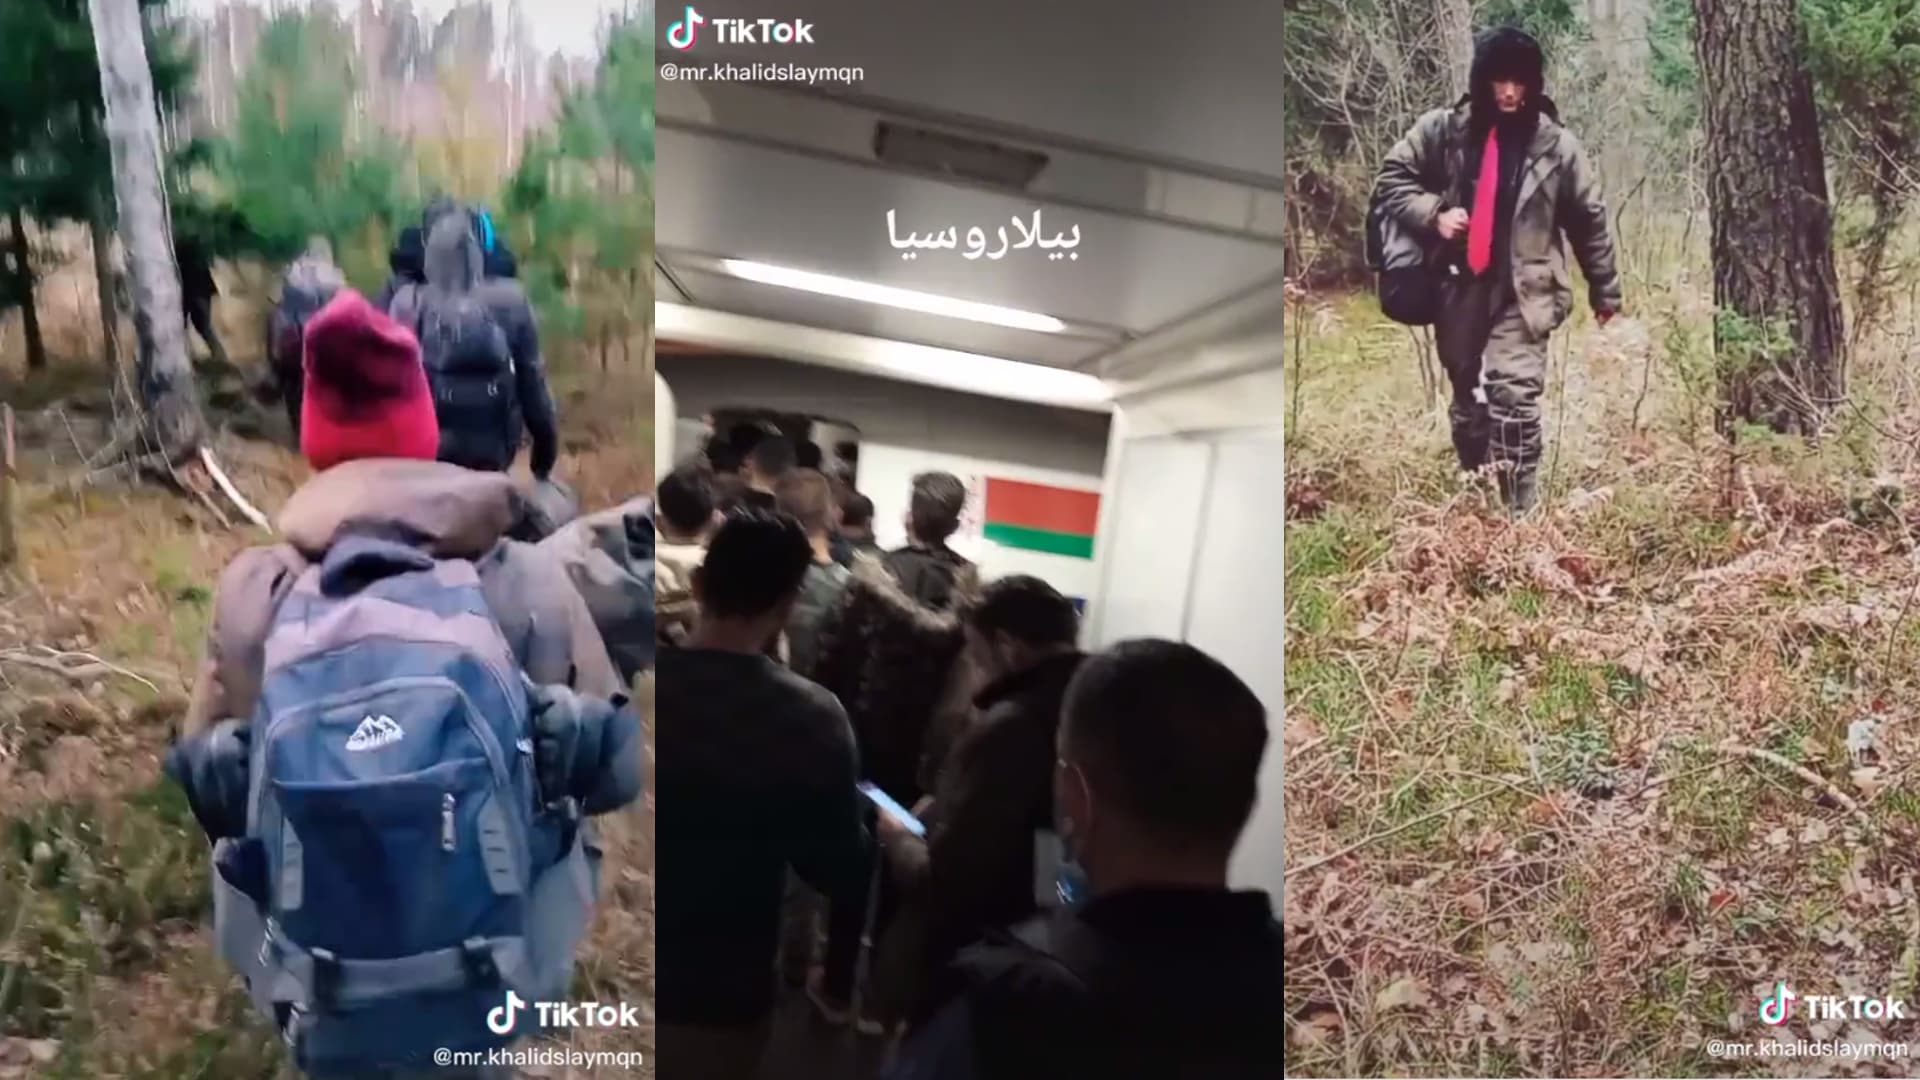 Ci uchodźcy dokumentują swoją podróż na TikTok